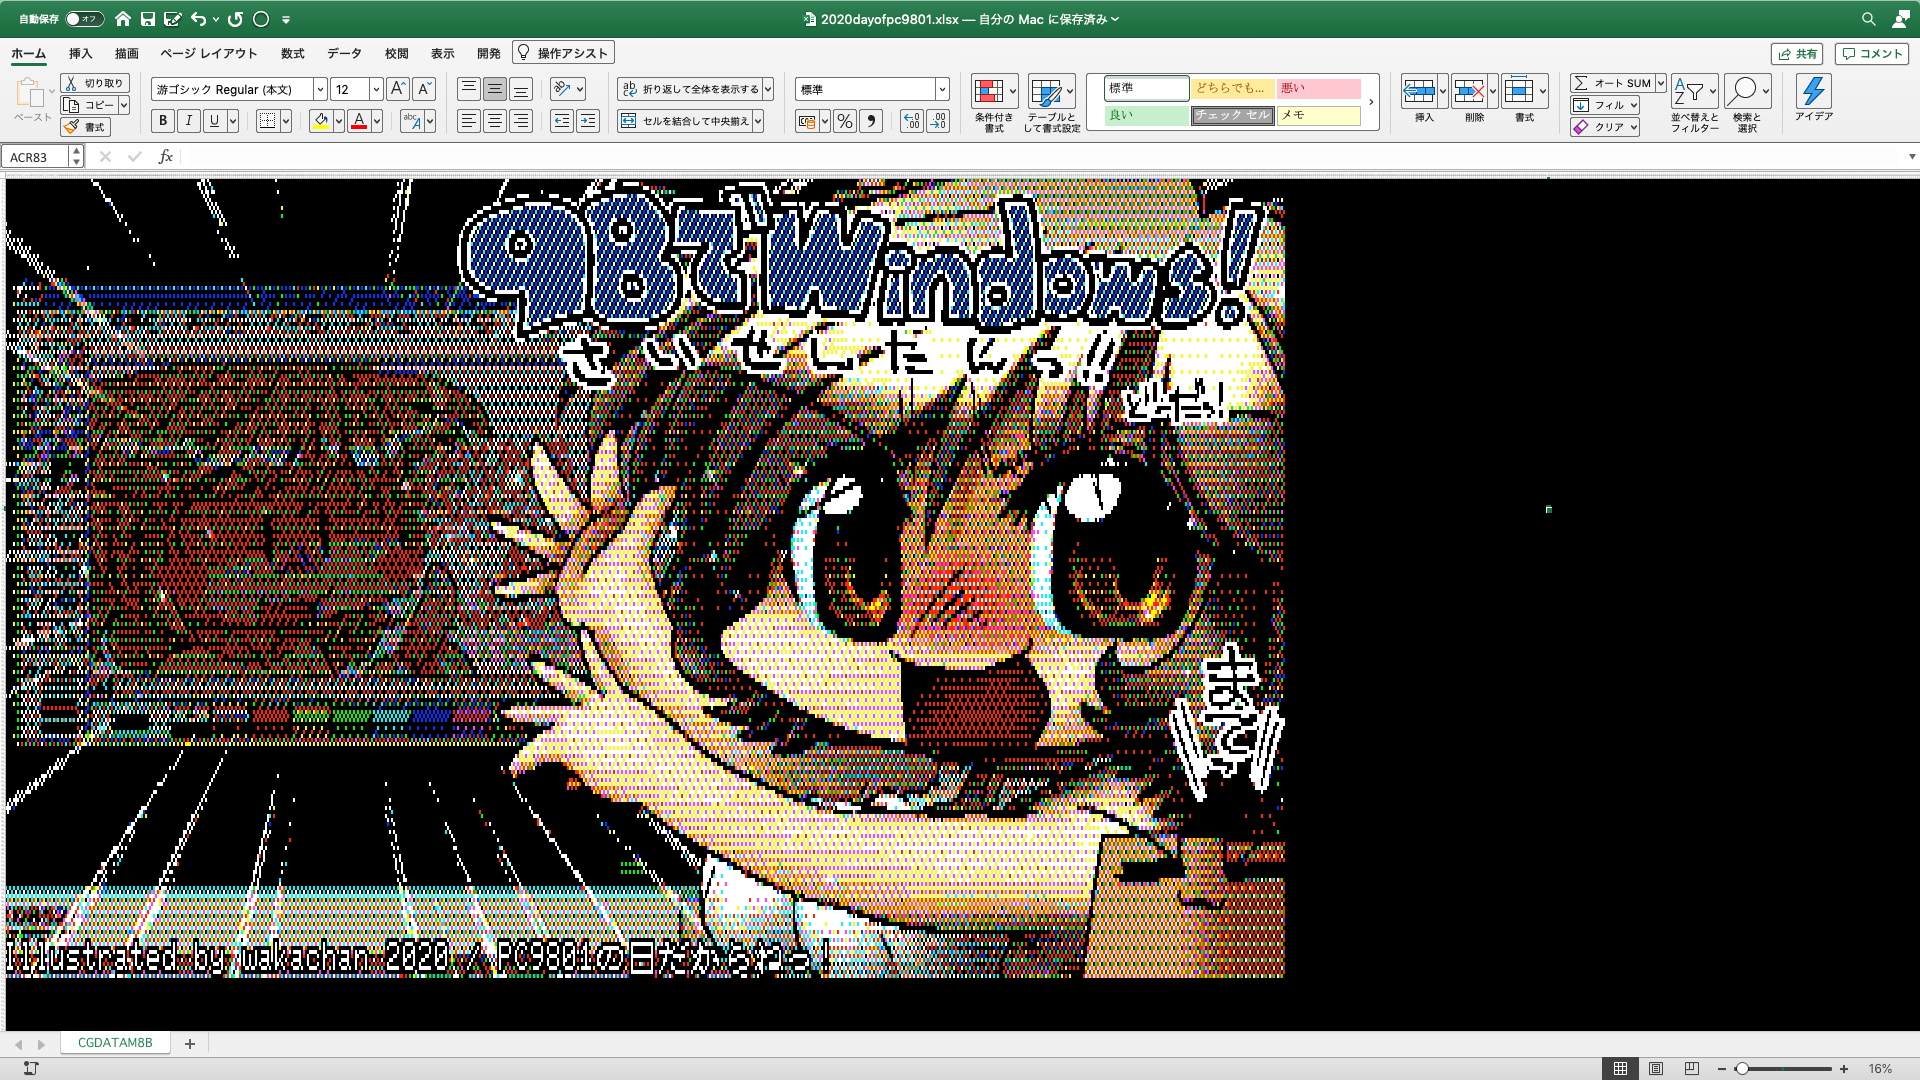 【ExcelArt(エクセルアート)】「PC9801の日だからねっ!」Excel展開中の画面